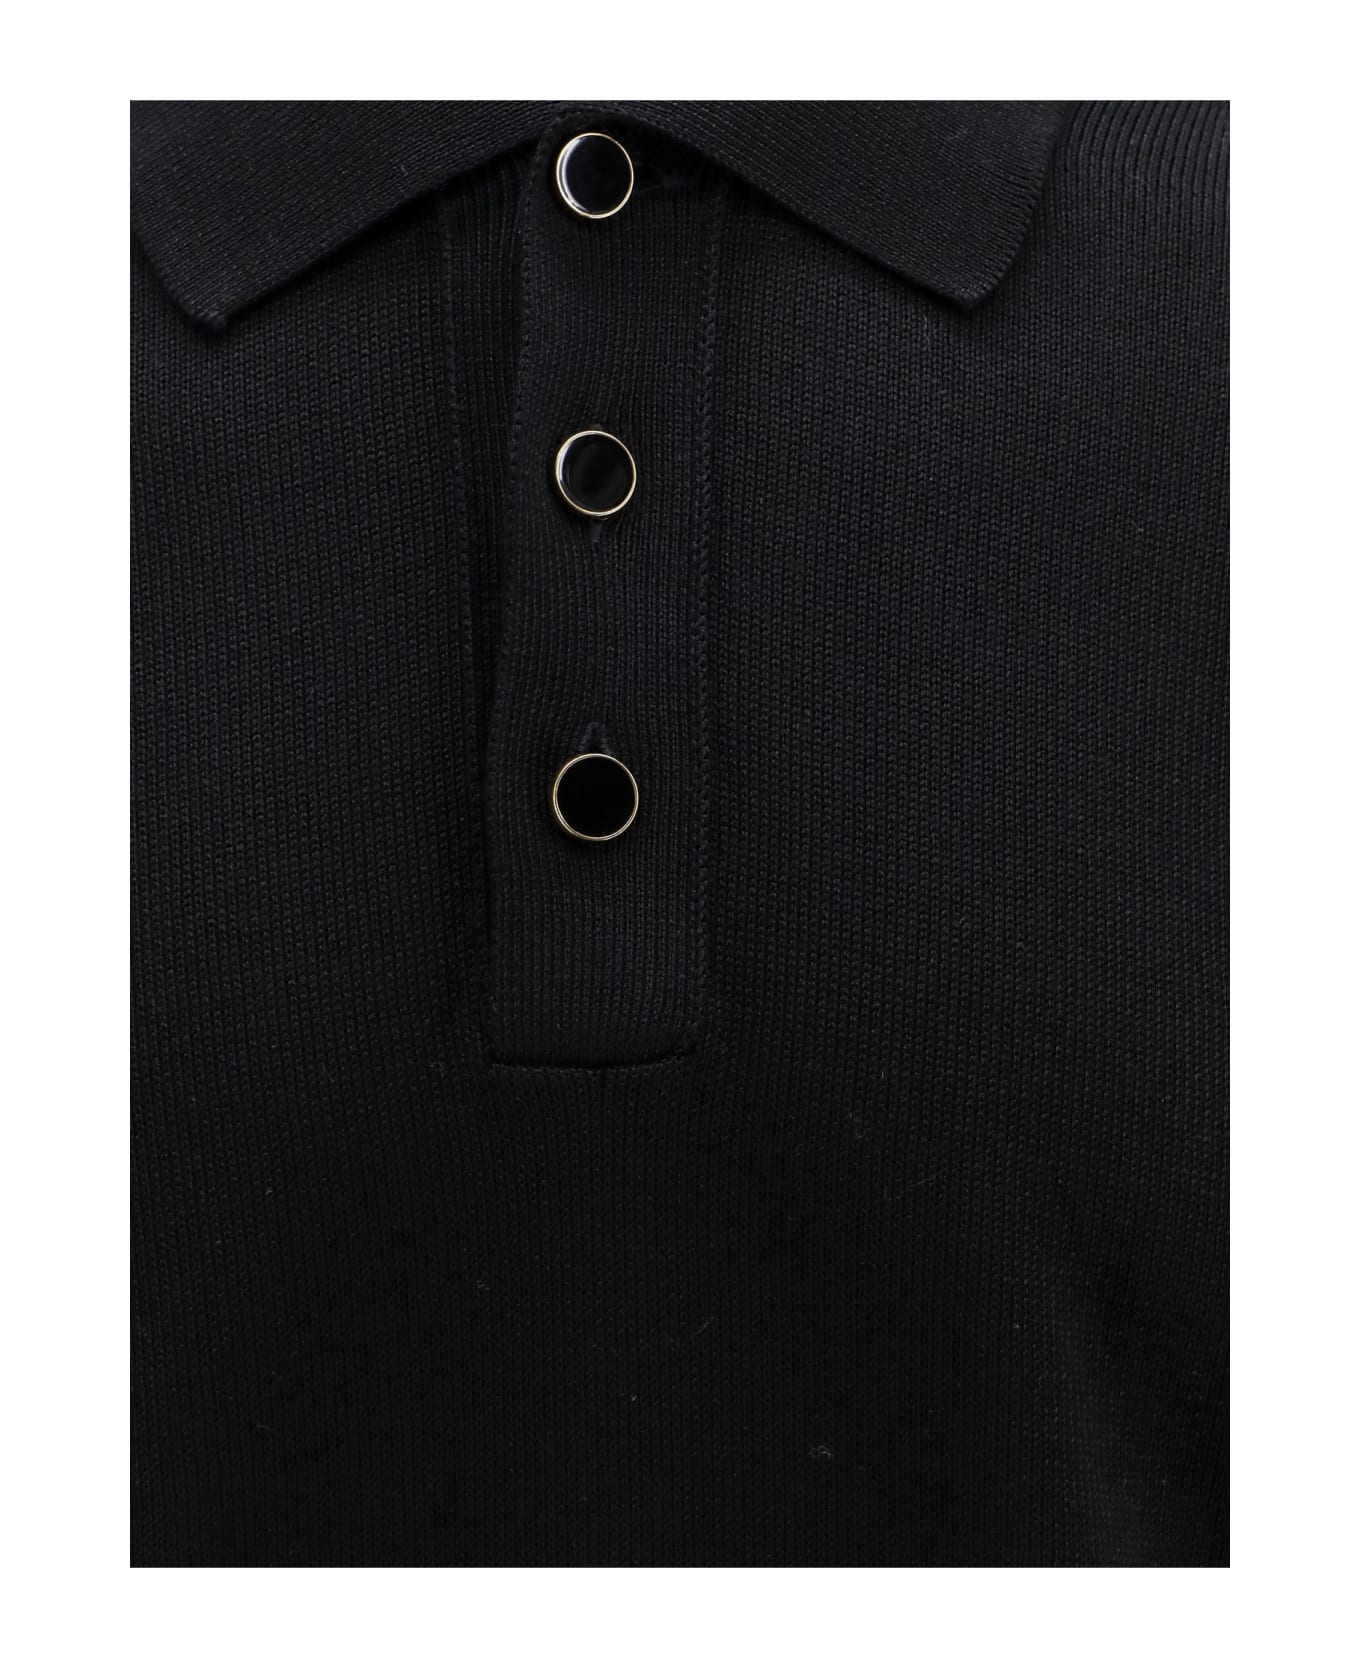 Lardini Polo Shirt - Black